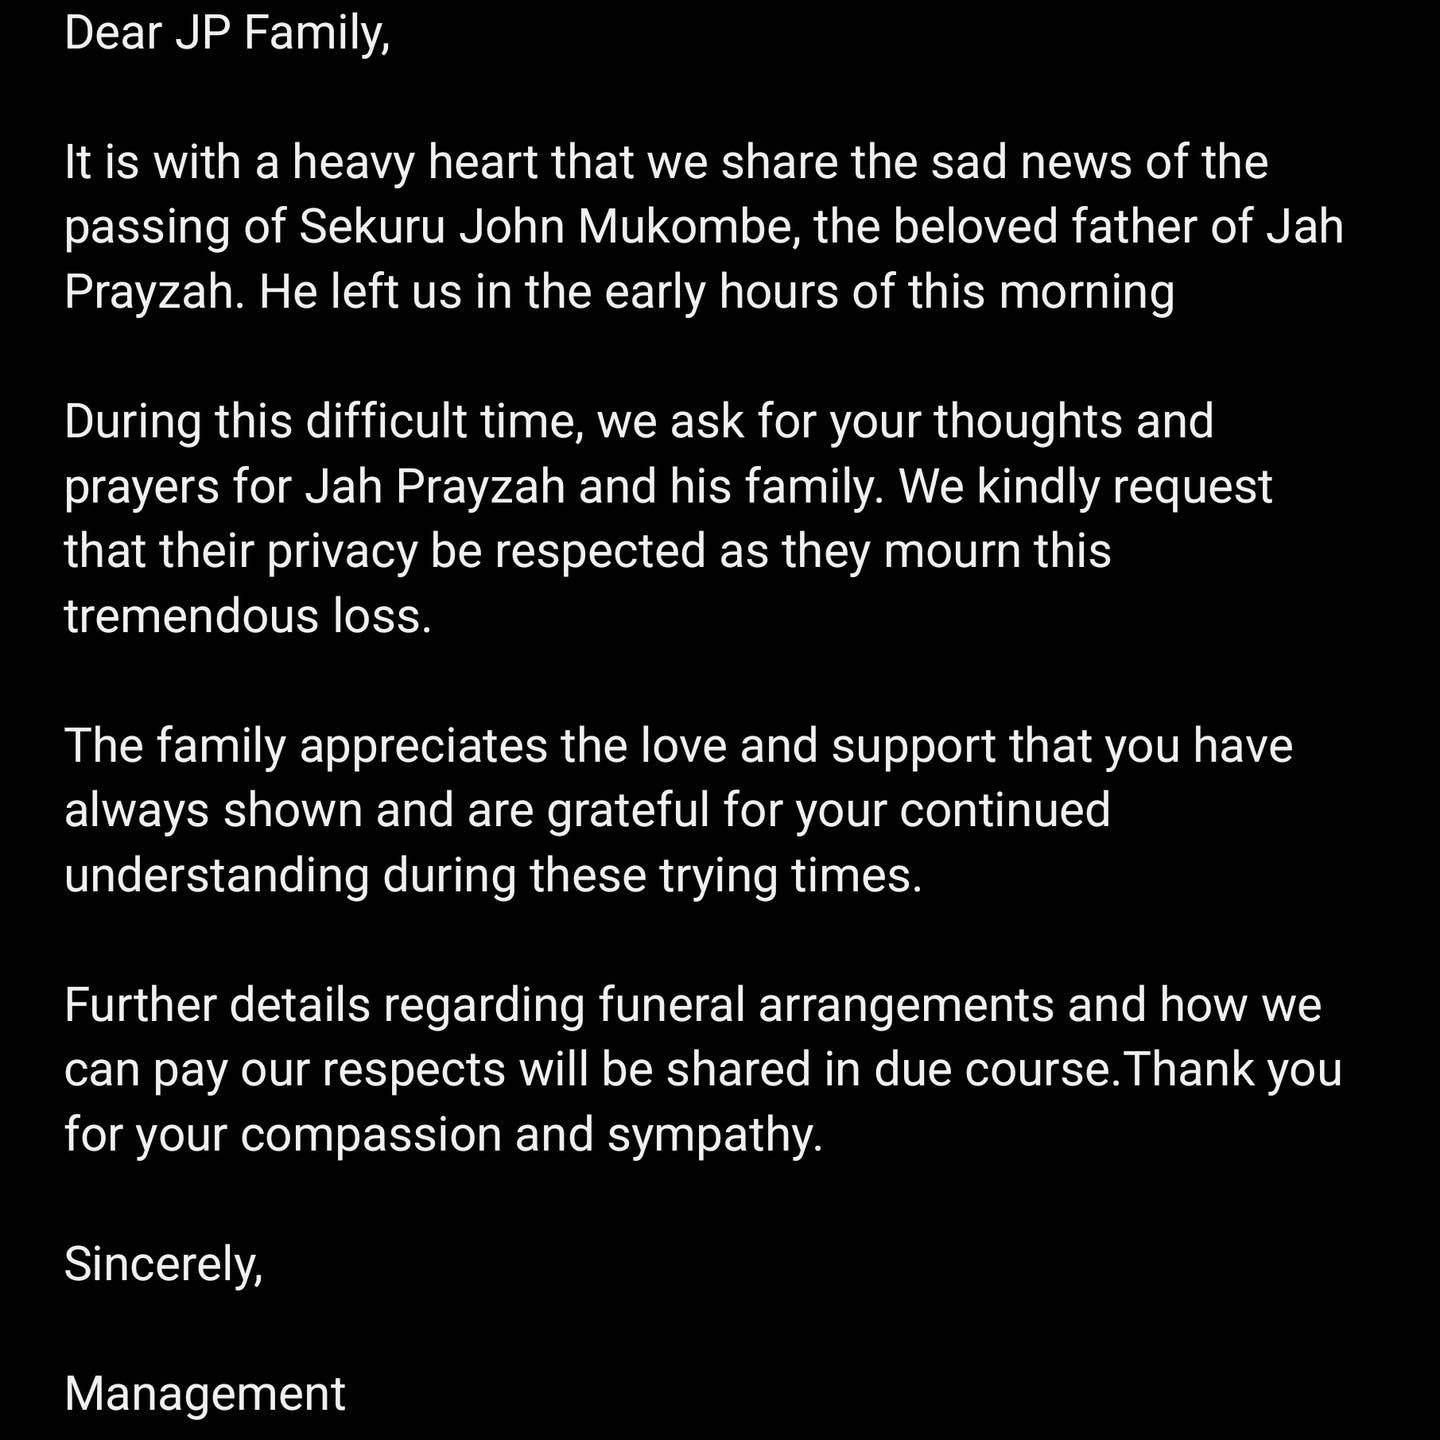 Jah Prayzah's father has passed away